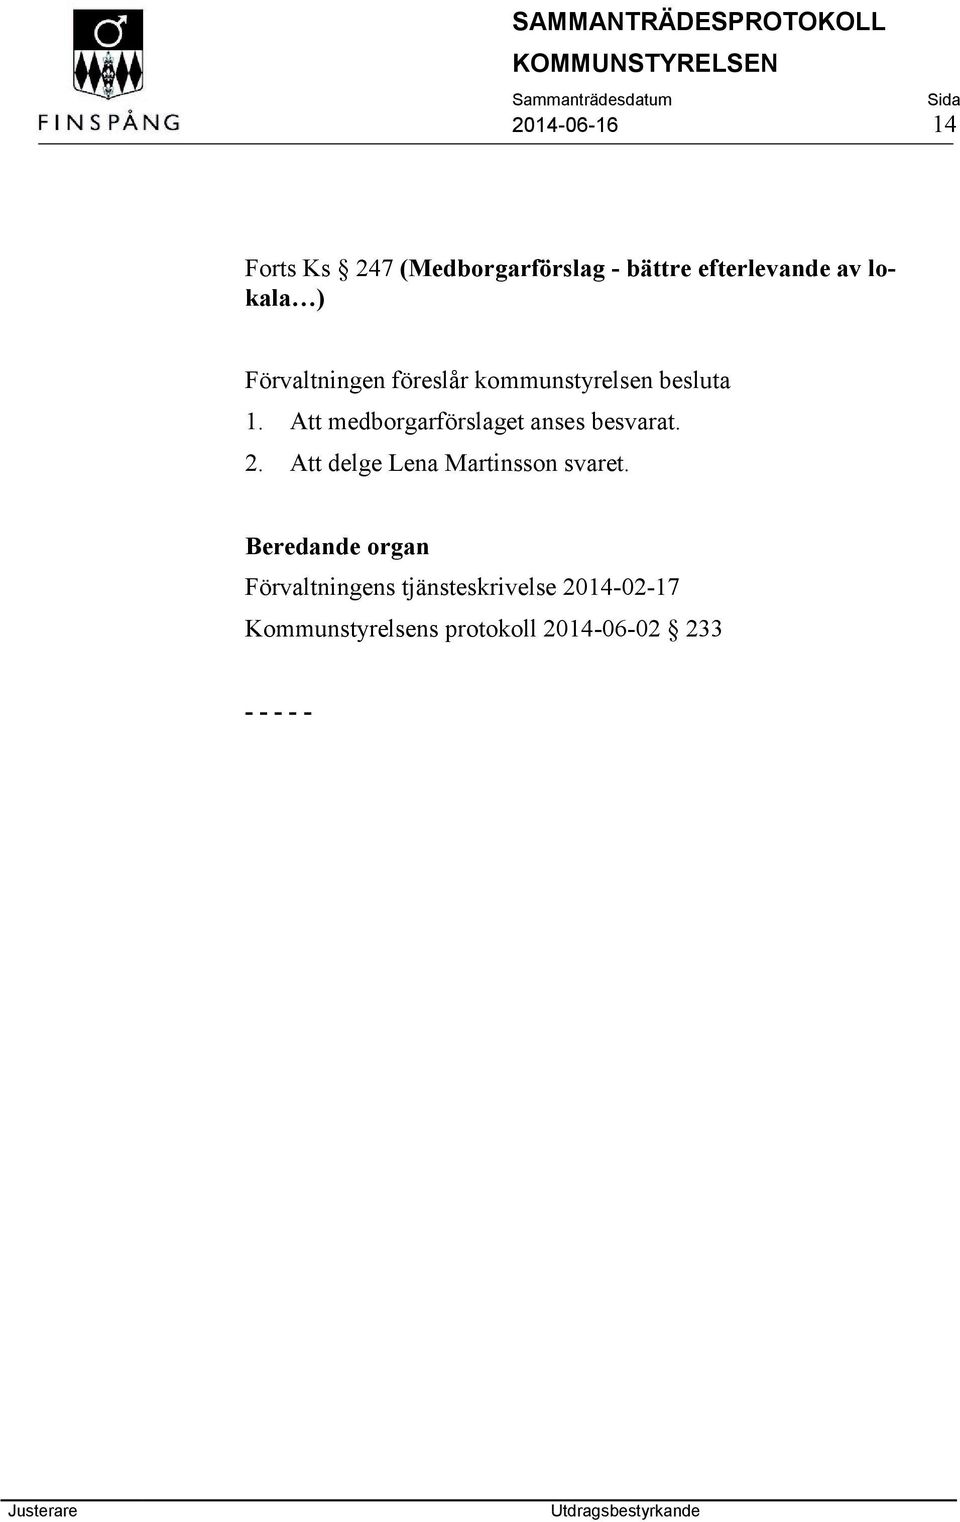 Att medborgarförslaget anses besvarat. 2. Att delge Lena Martinsson svaret.